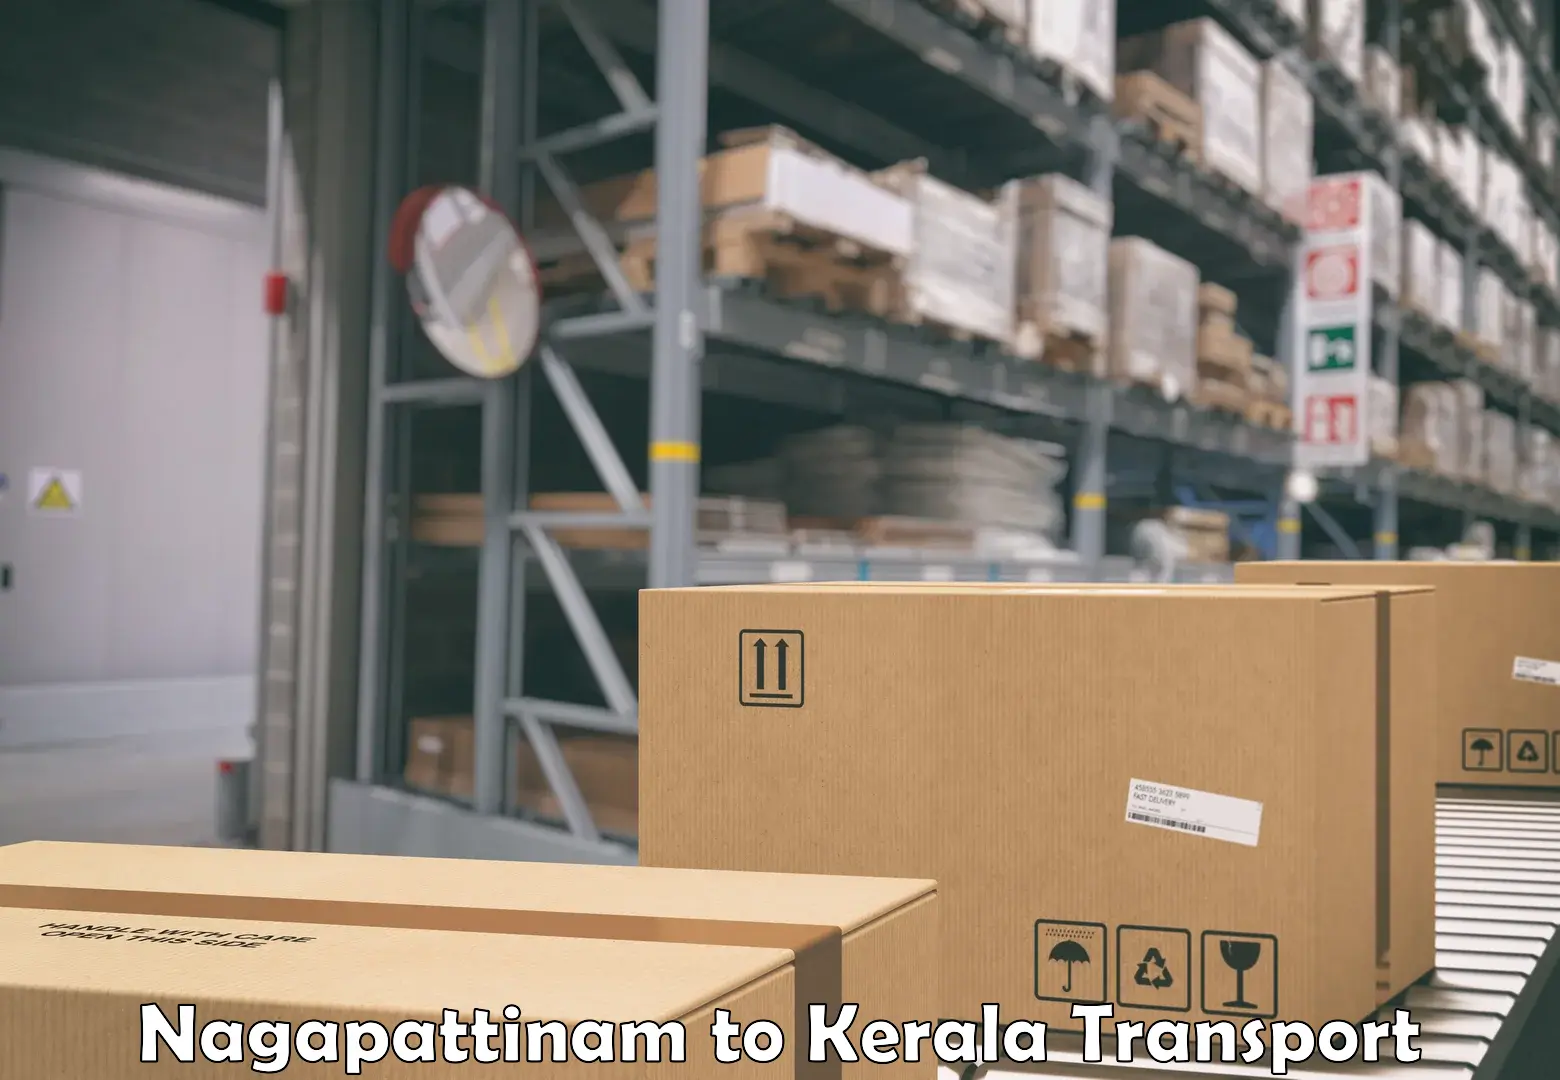 Shipping partner Nagapattinam to Nedumkandam